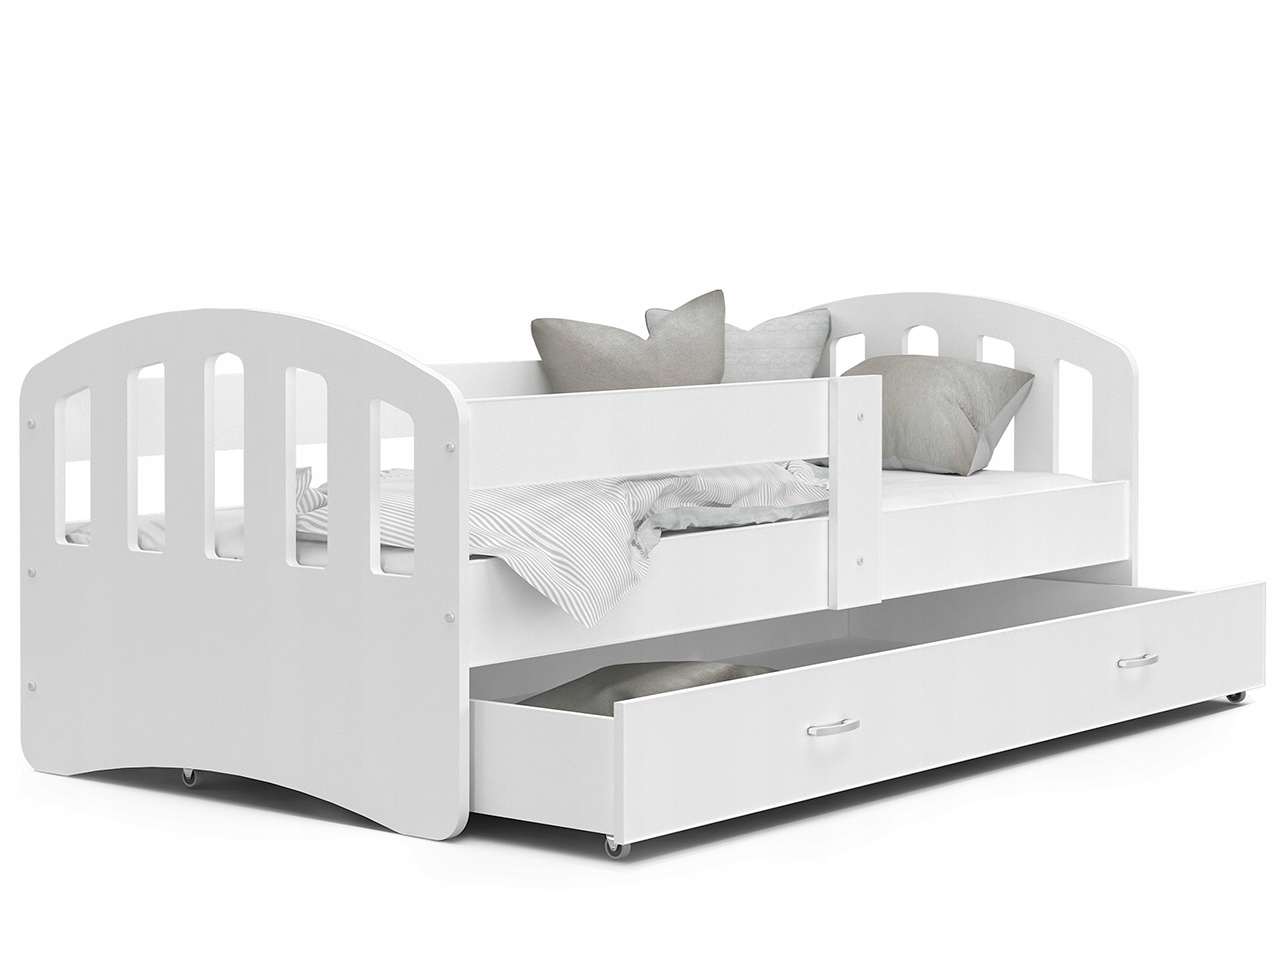 Otroške postelje - Otroška postelja Happy Premium + GRATIS LEŽIŠČE IZ PENE  - 80x160 - ZELENA BARVA / 208